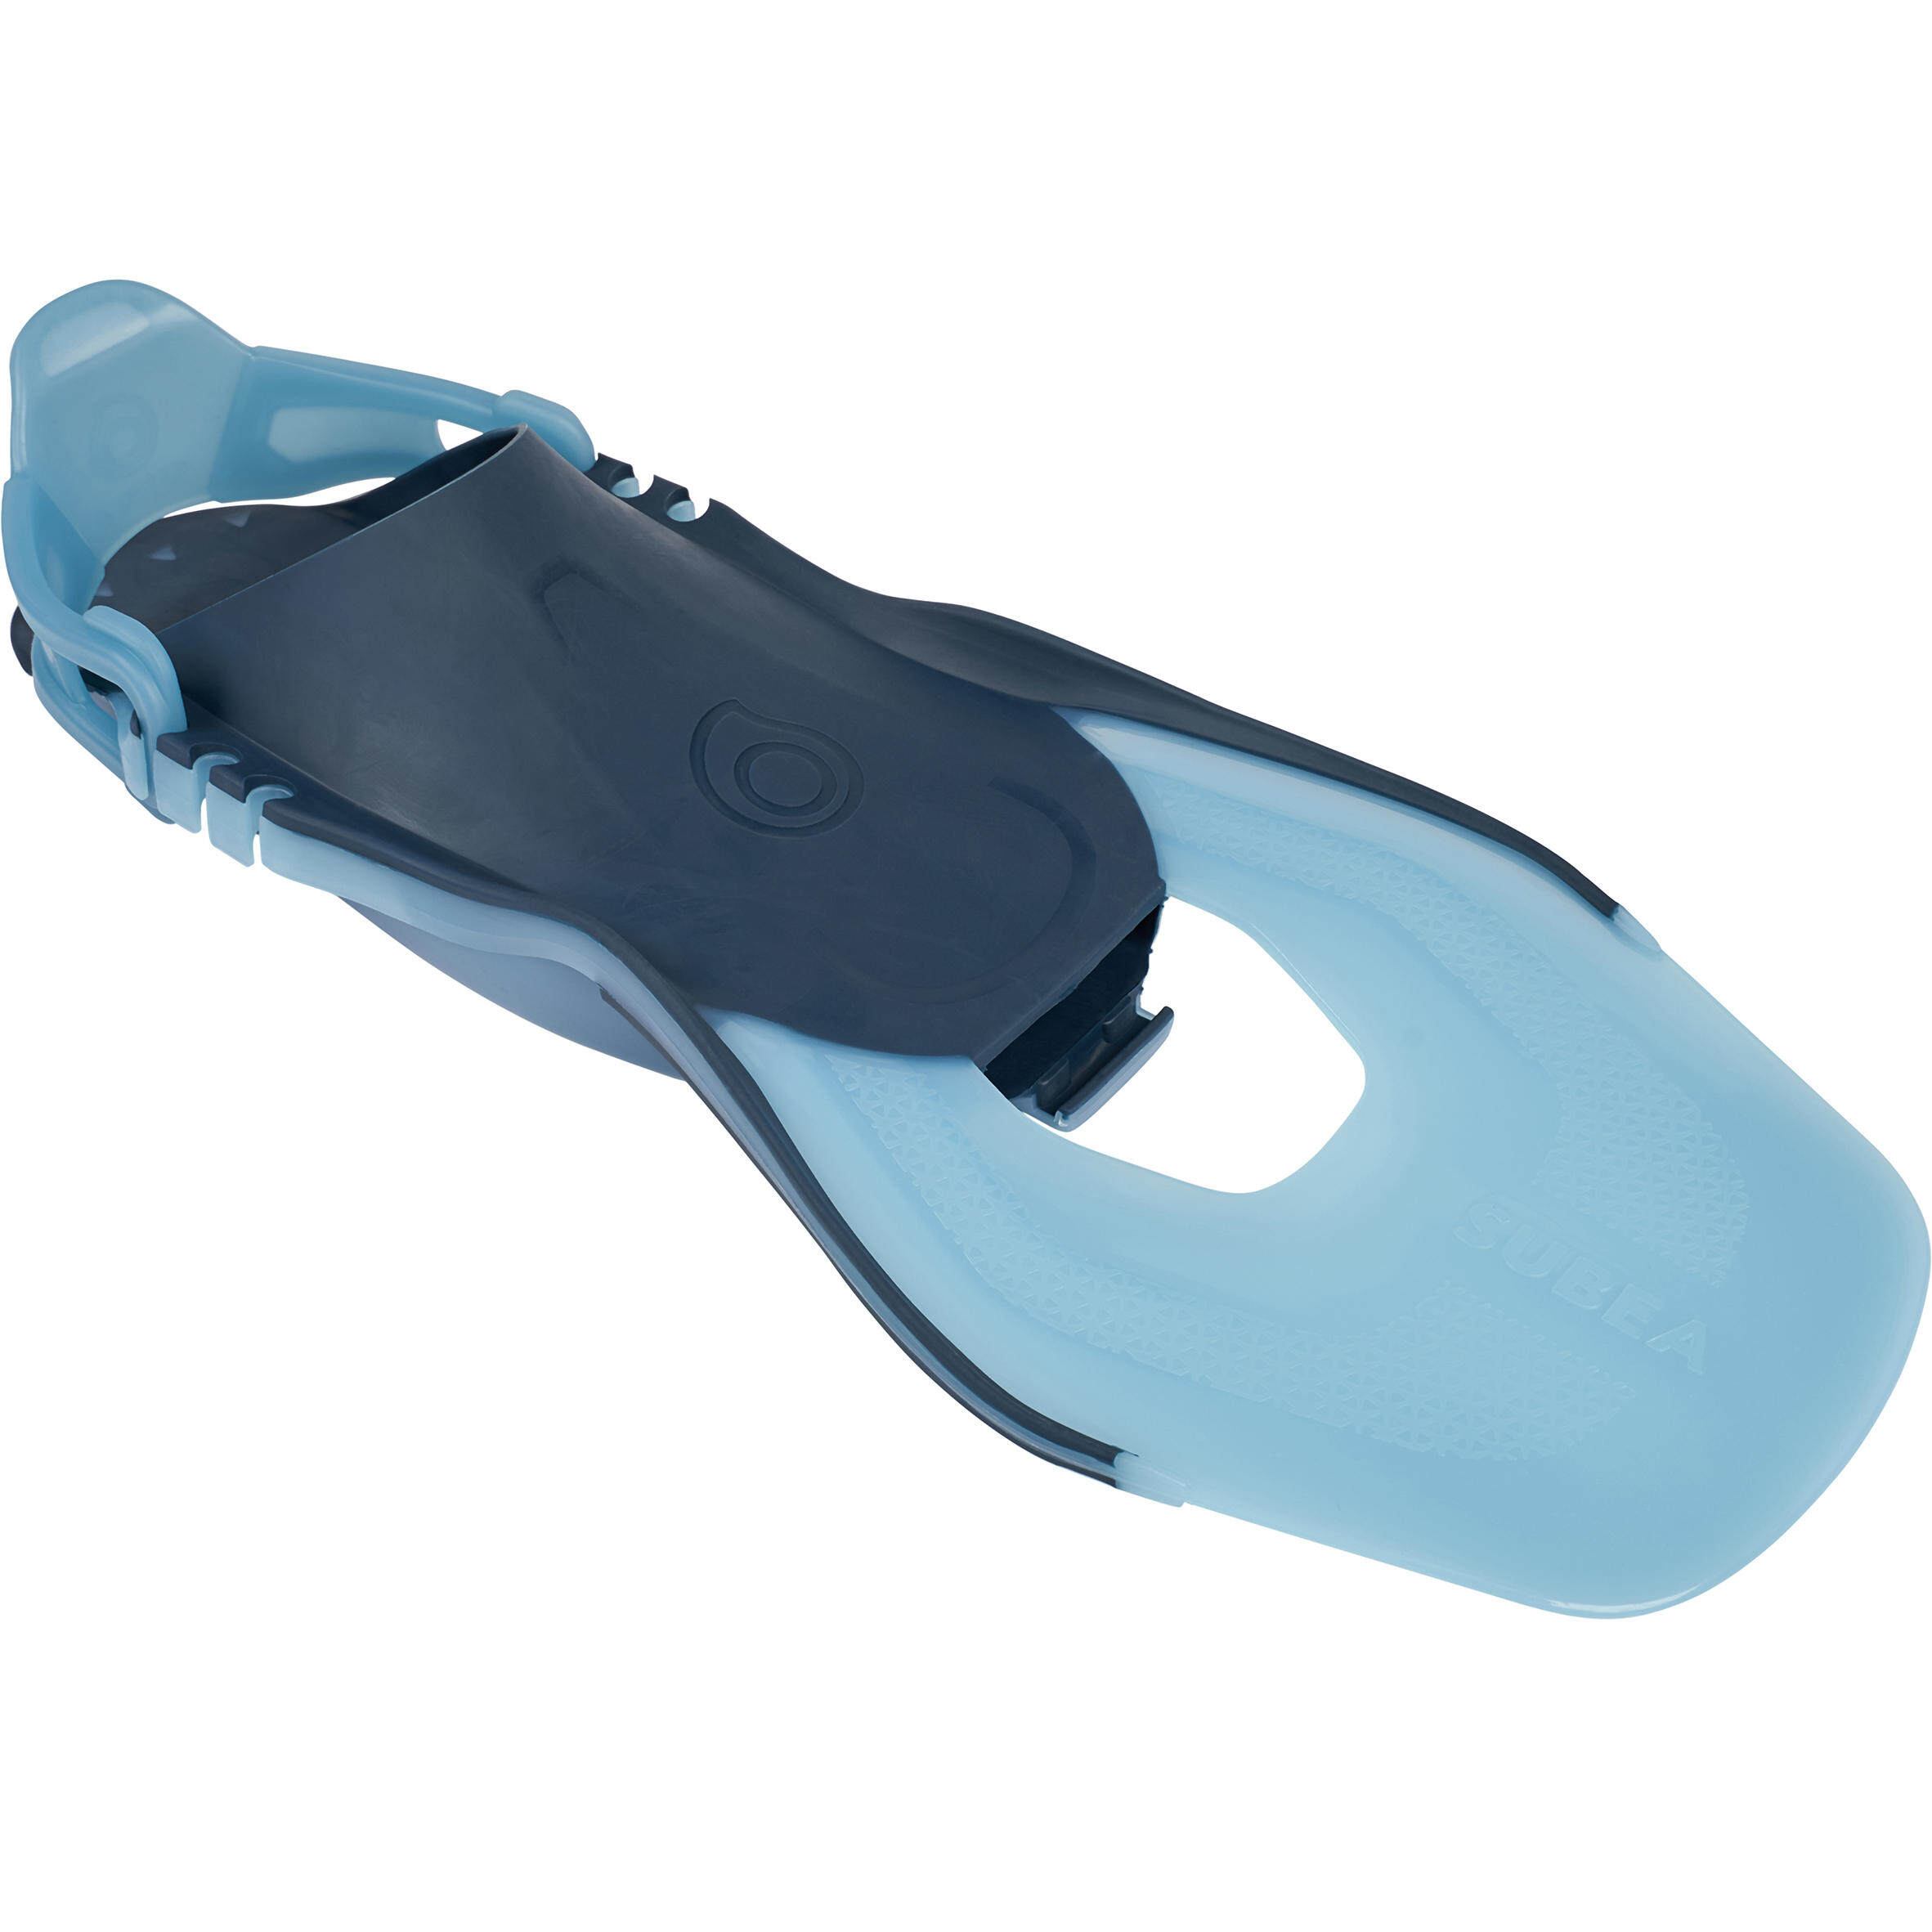 [ส่งฟรี ] ตีนกบผู้ใหญ่แบบปรับได้สำหรับดำน้ำตื้นรุ่น SNK 100 (สีฟ้า Turquoise) Adult adjustable snorkelling fins SNK 100 Turquoise ของแท้ ตีนกบว่ายน้ำ ตีนกบดำน้ำ ตีนกบดำน้ำลึก มีรับประกัน คุณภาพดี โปรโมชั่นสุดคุ้ม โค้งสุดท้าย